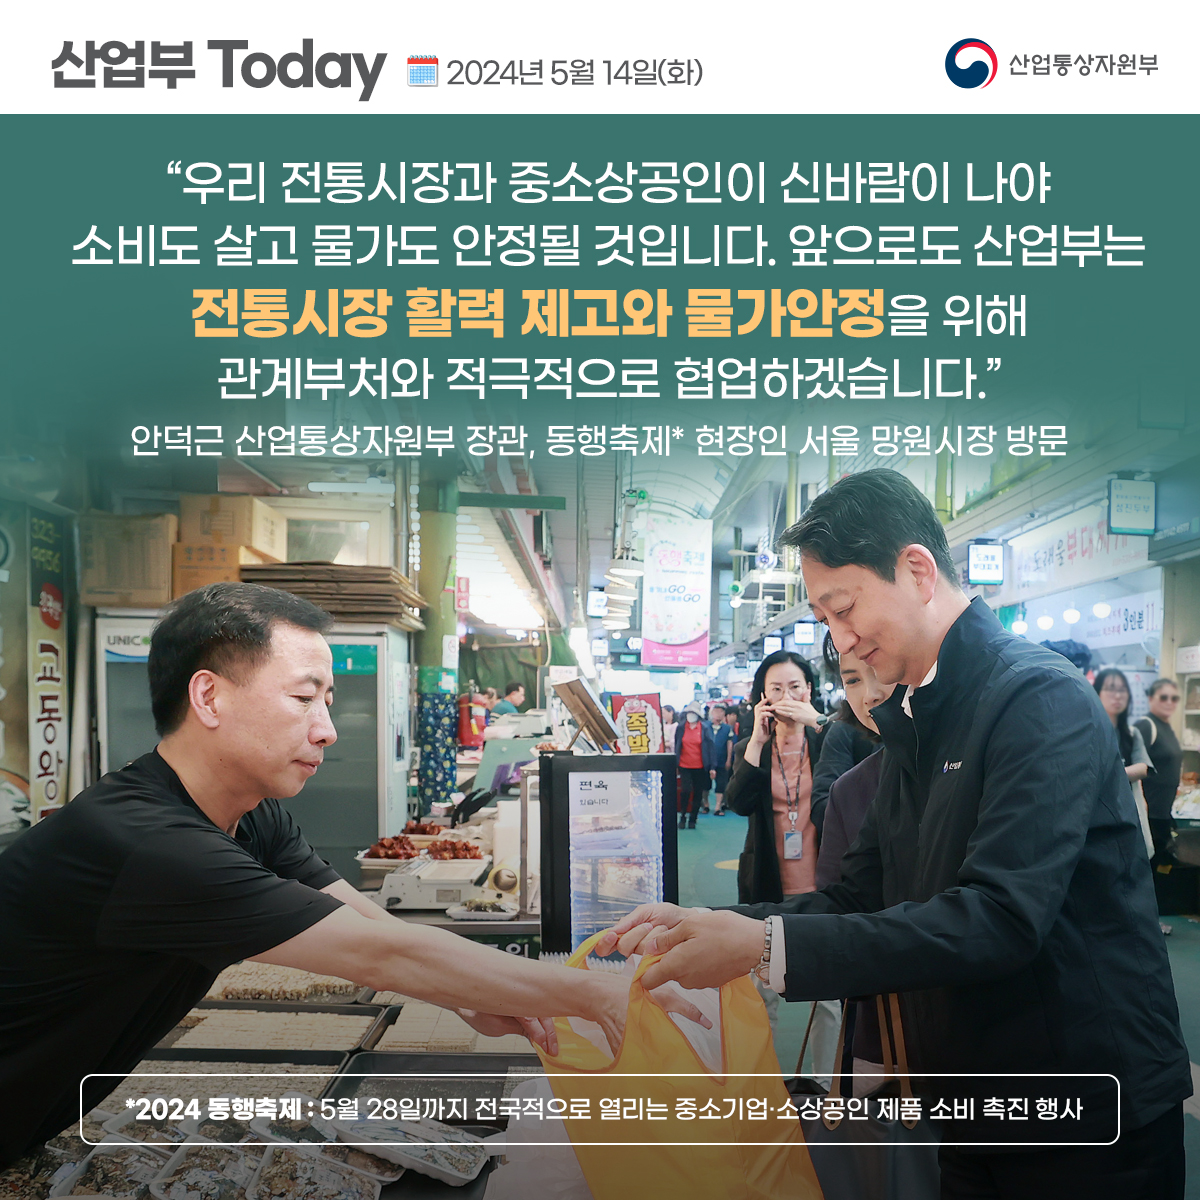 안덕근 산업통상자원부 장관, 동행축제 현장인 서울 망원시장 방문